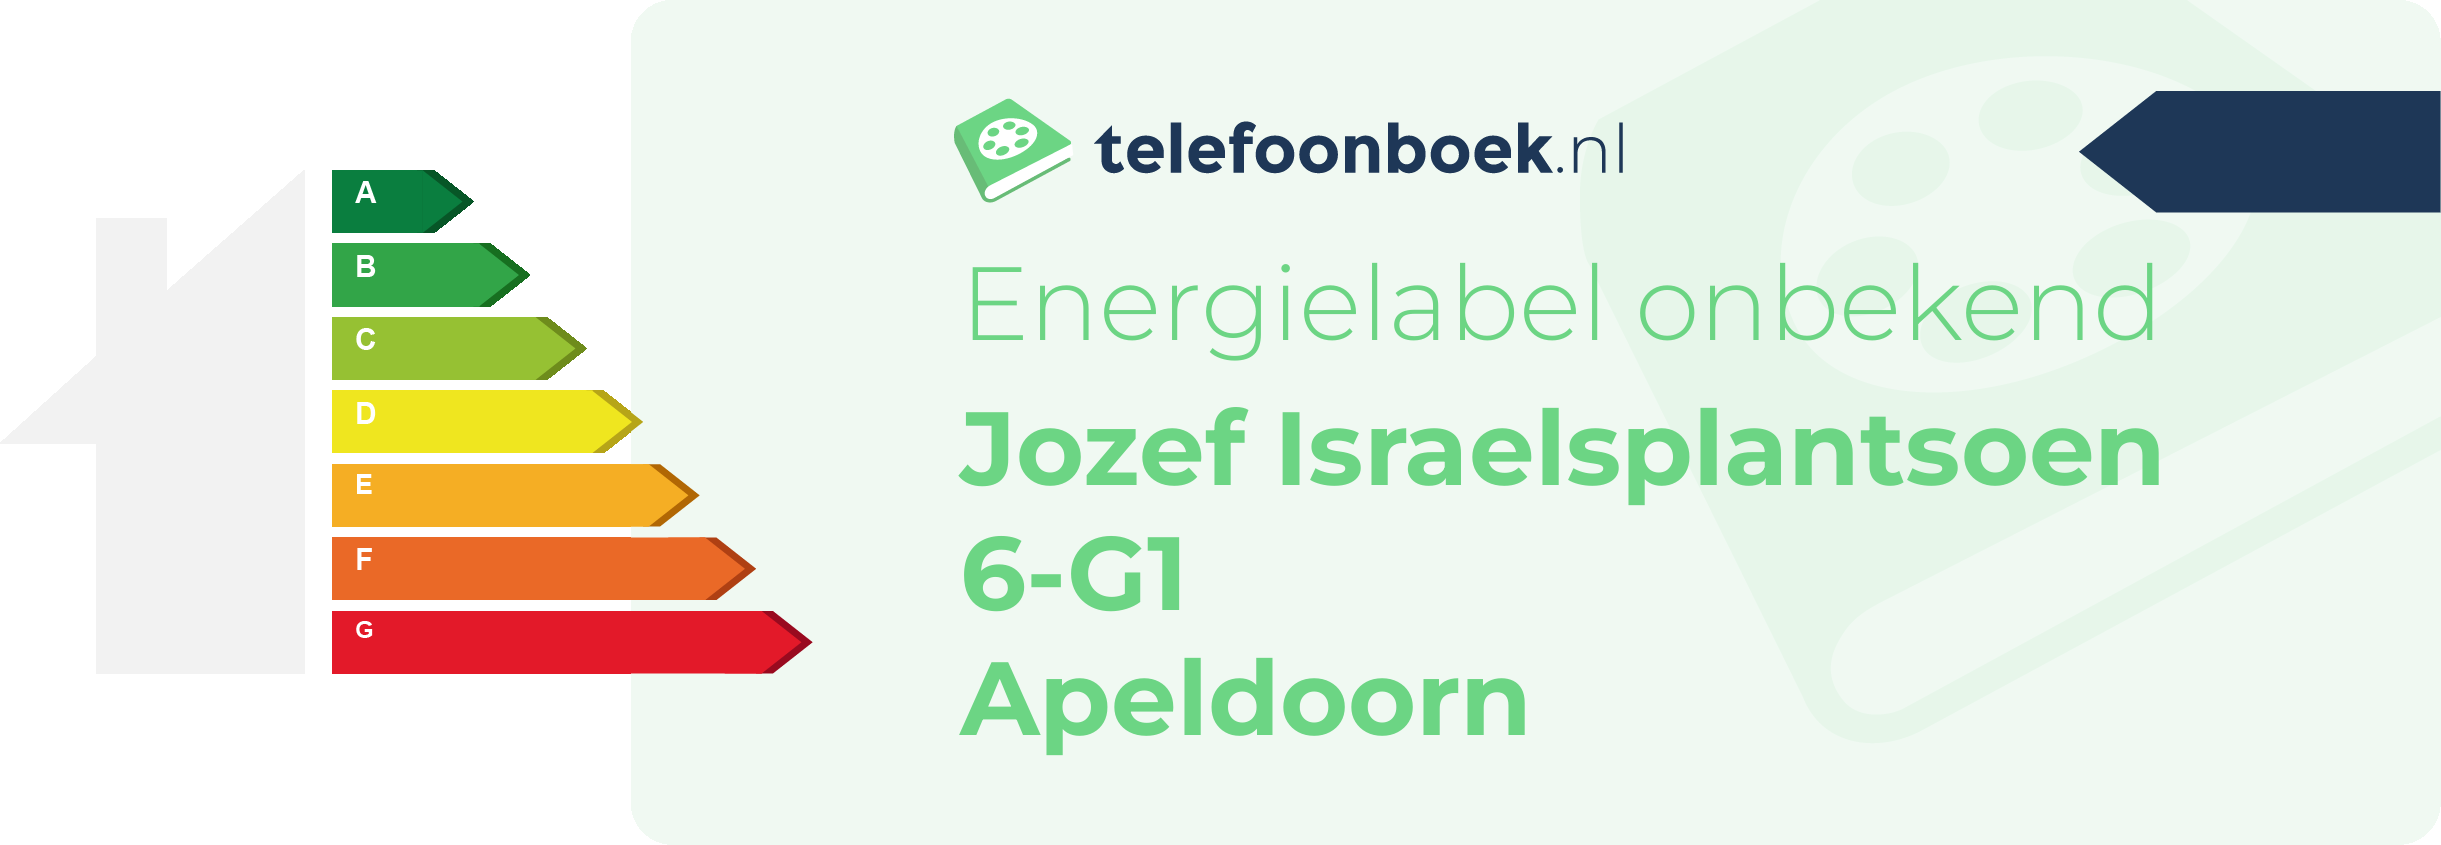 Energielabel Jozef Israelsplantsoen 6-G1 Apeldoorn